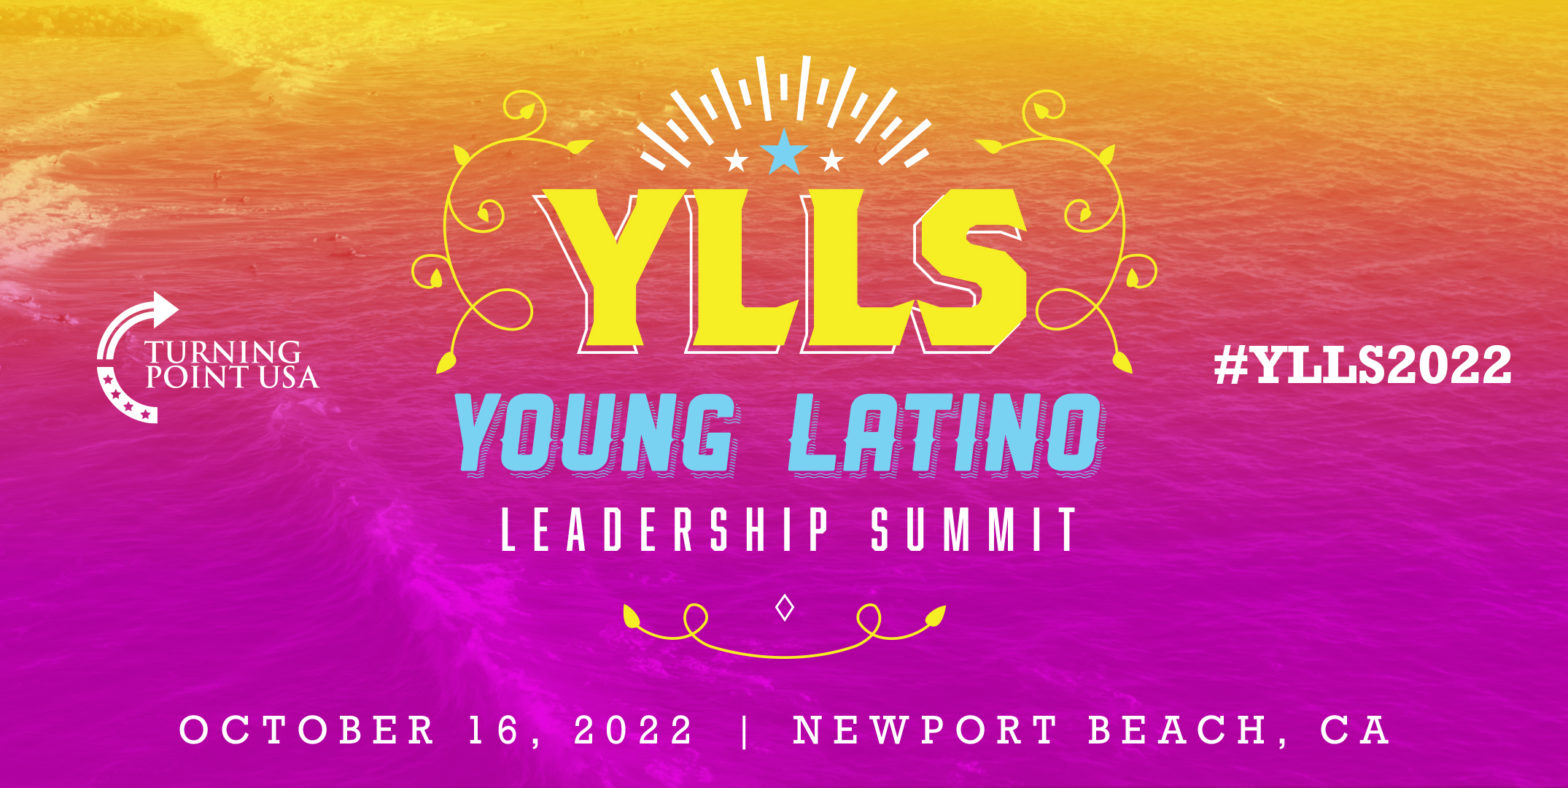 Young Latino Leadership Summit 2022